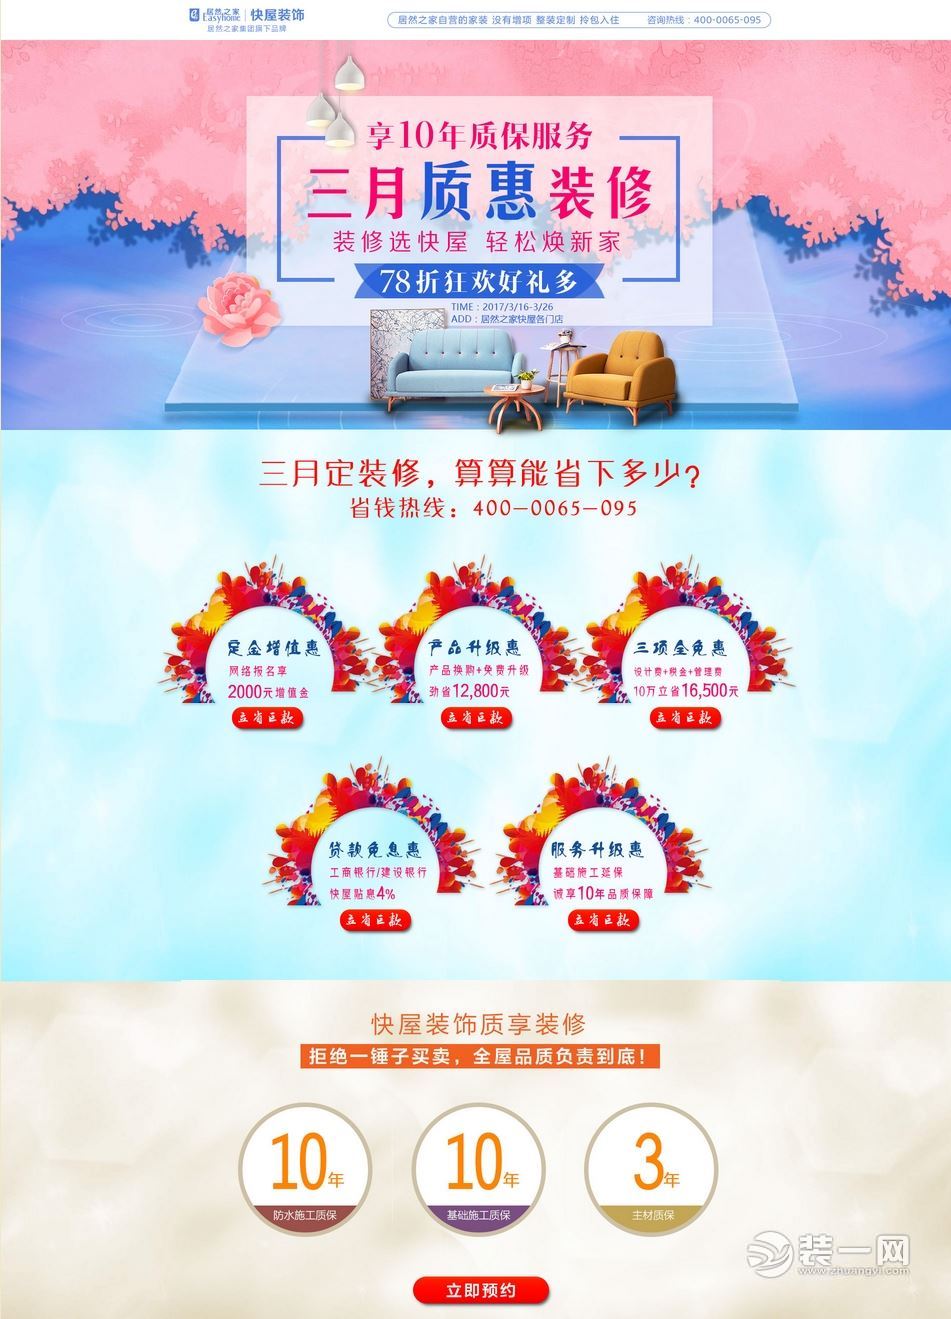 三月北京居然之家快屋装饰质惠装修 享十年质保服务